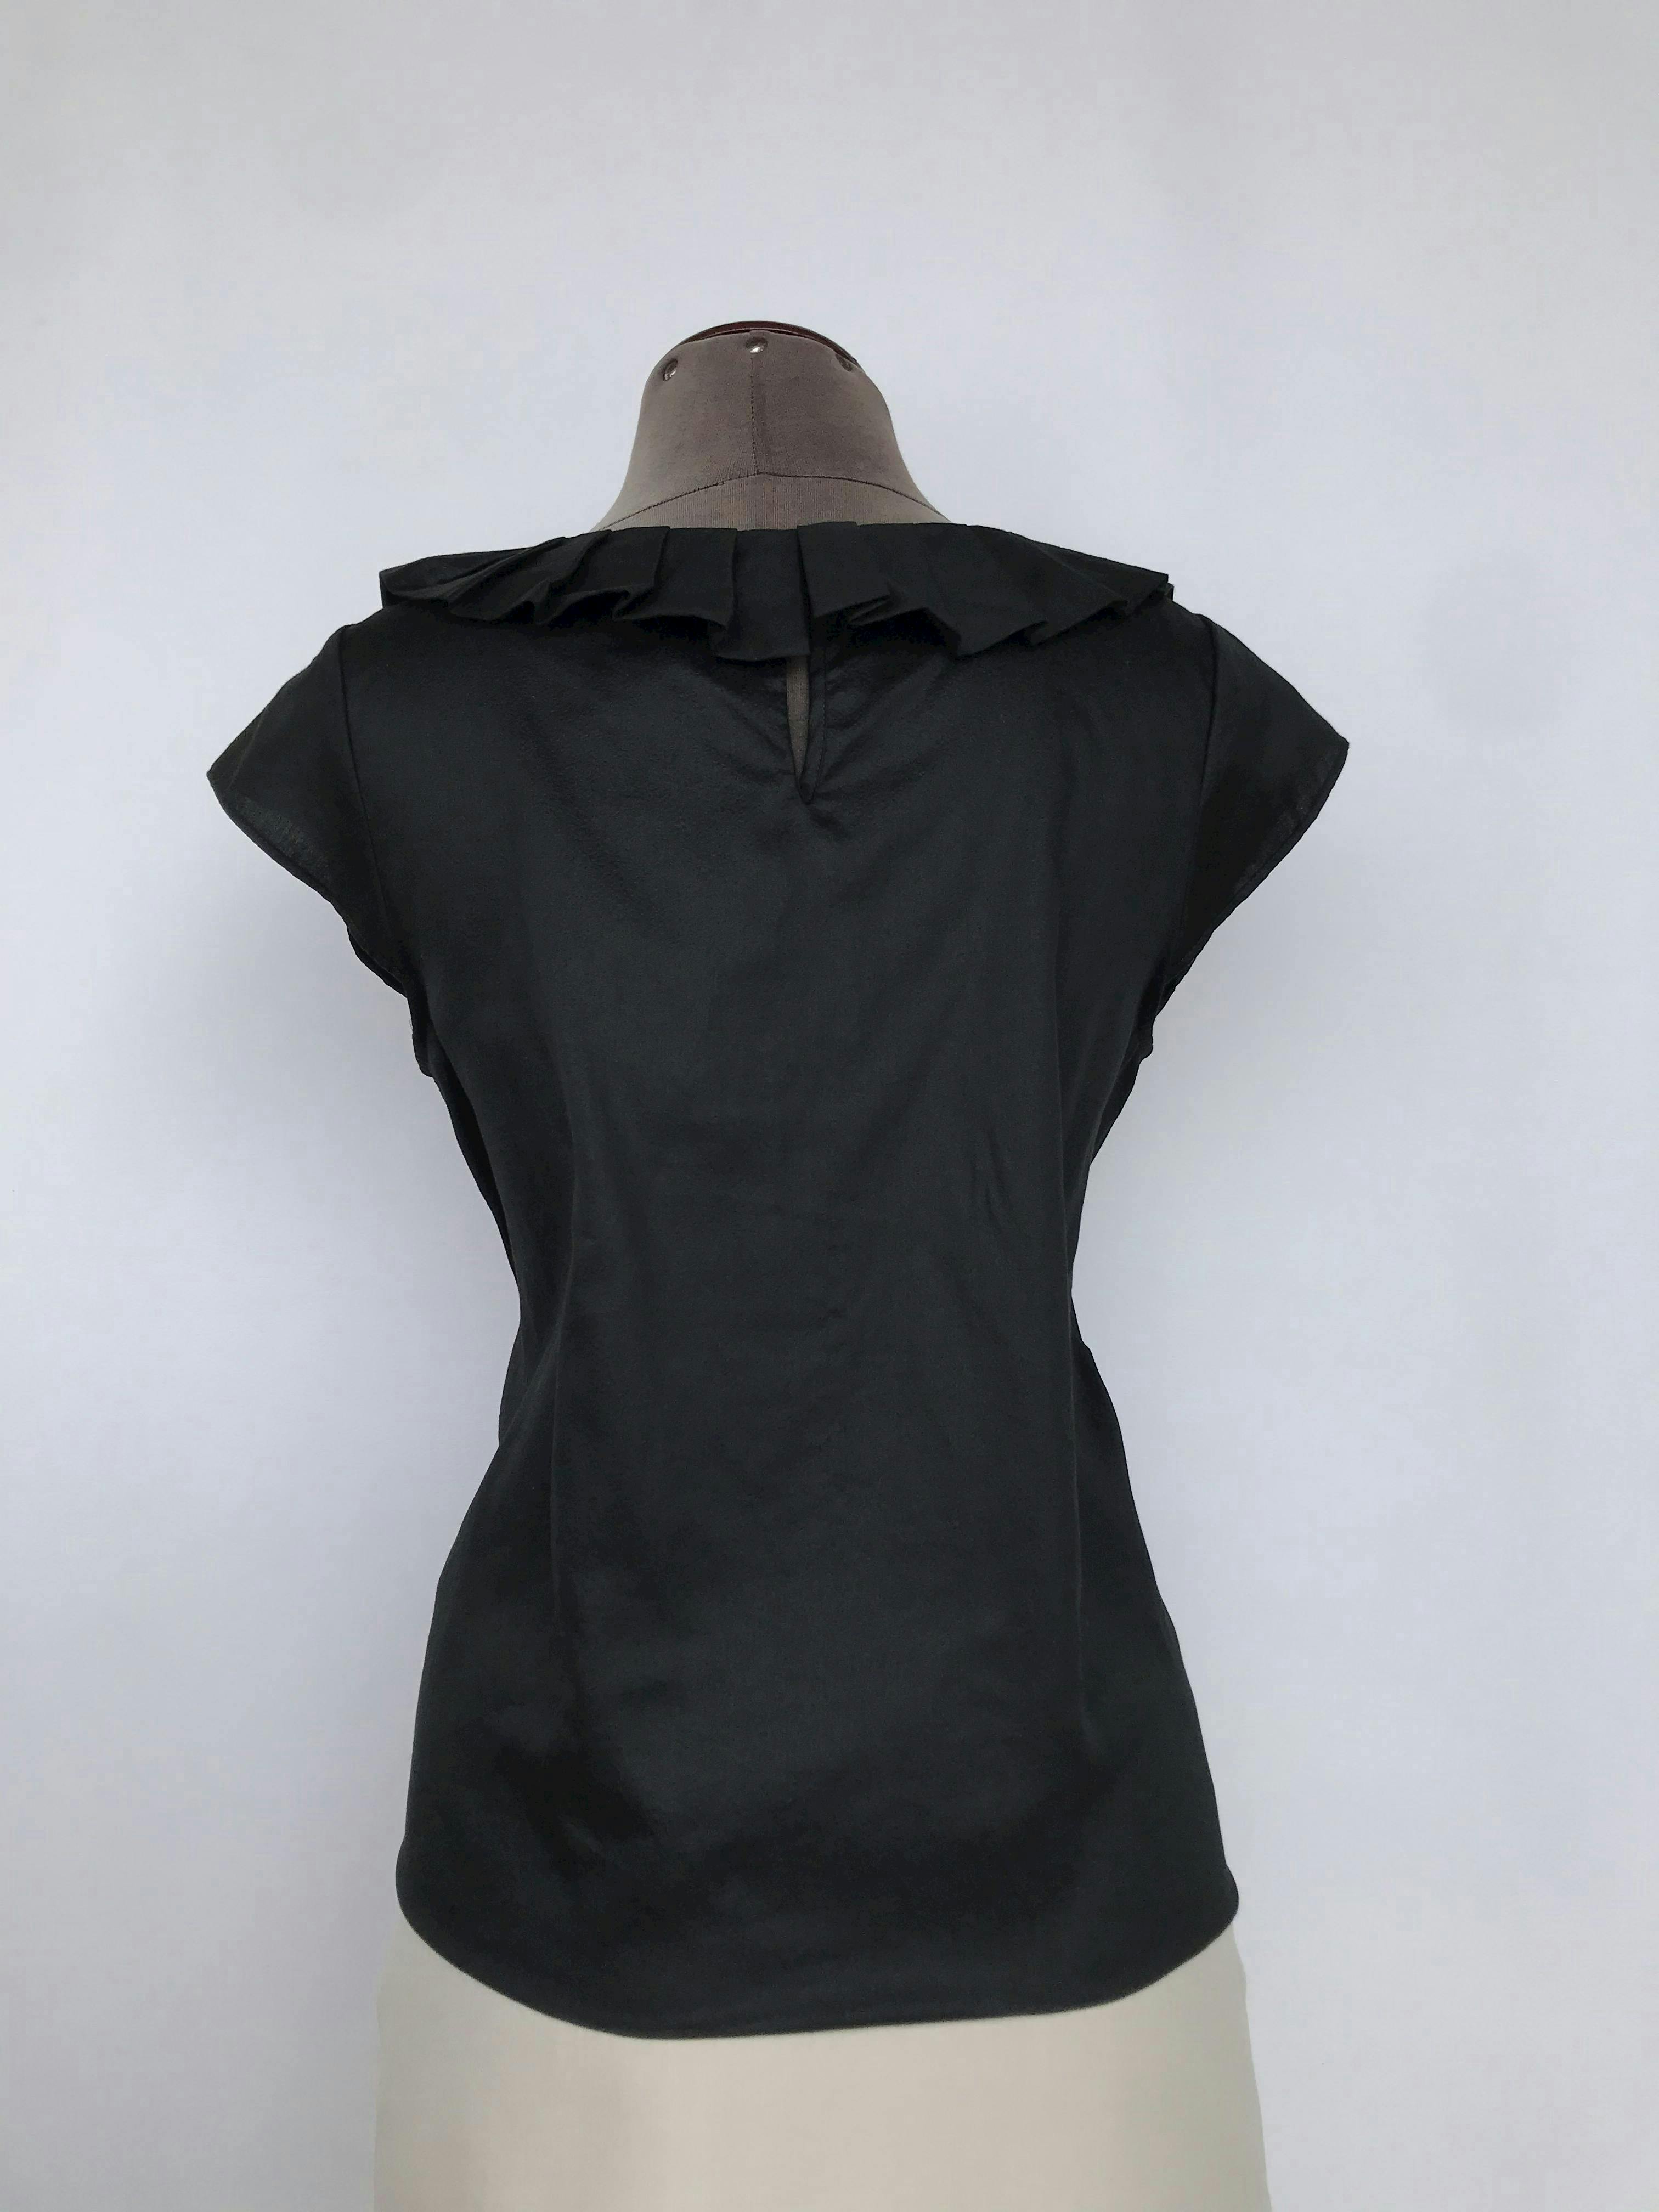 Blusa Club Monaco 100% algodón negro, cuello plisado y botón posterior. Precio original S/300
Talla M